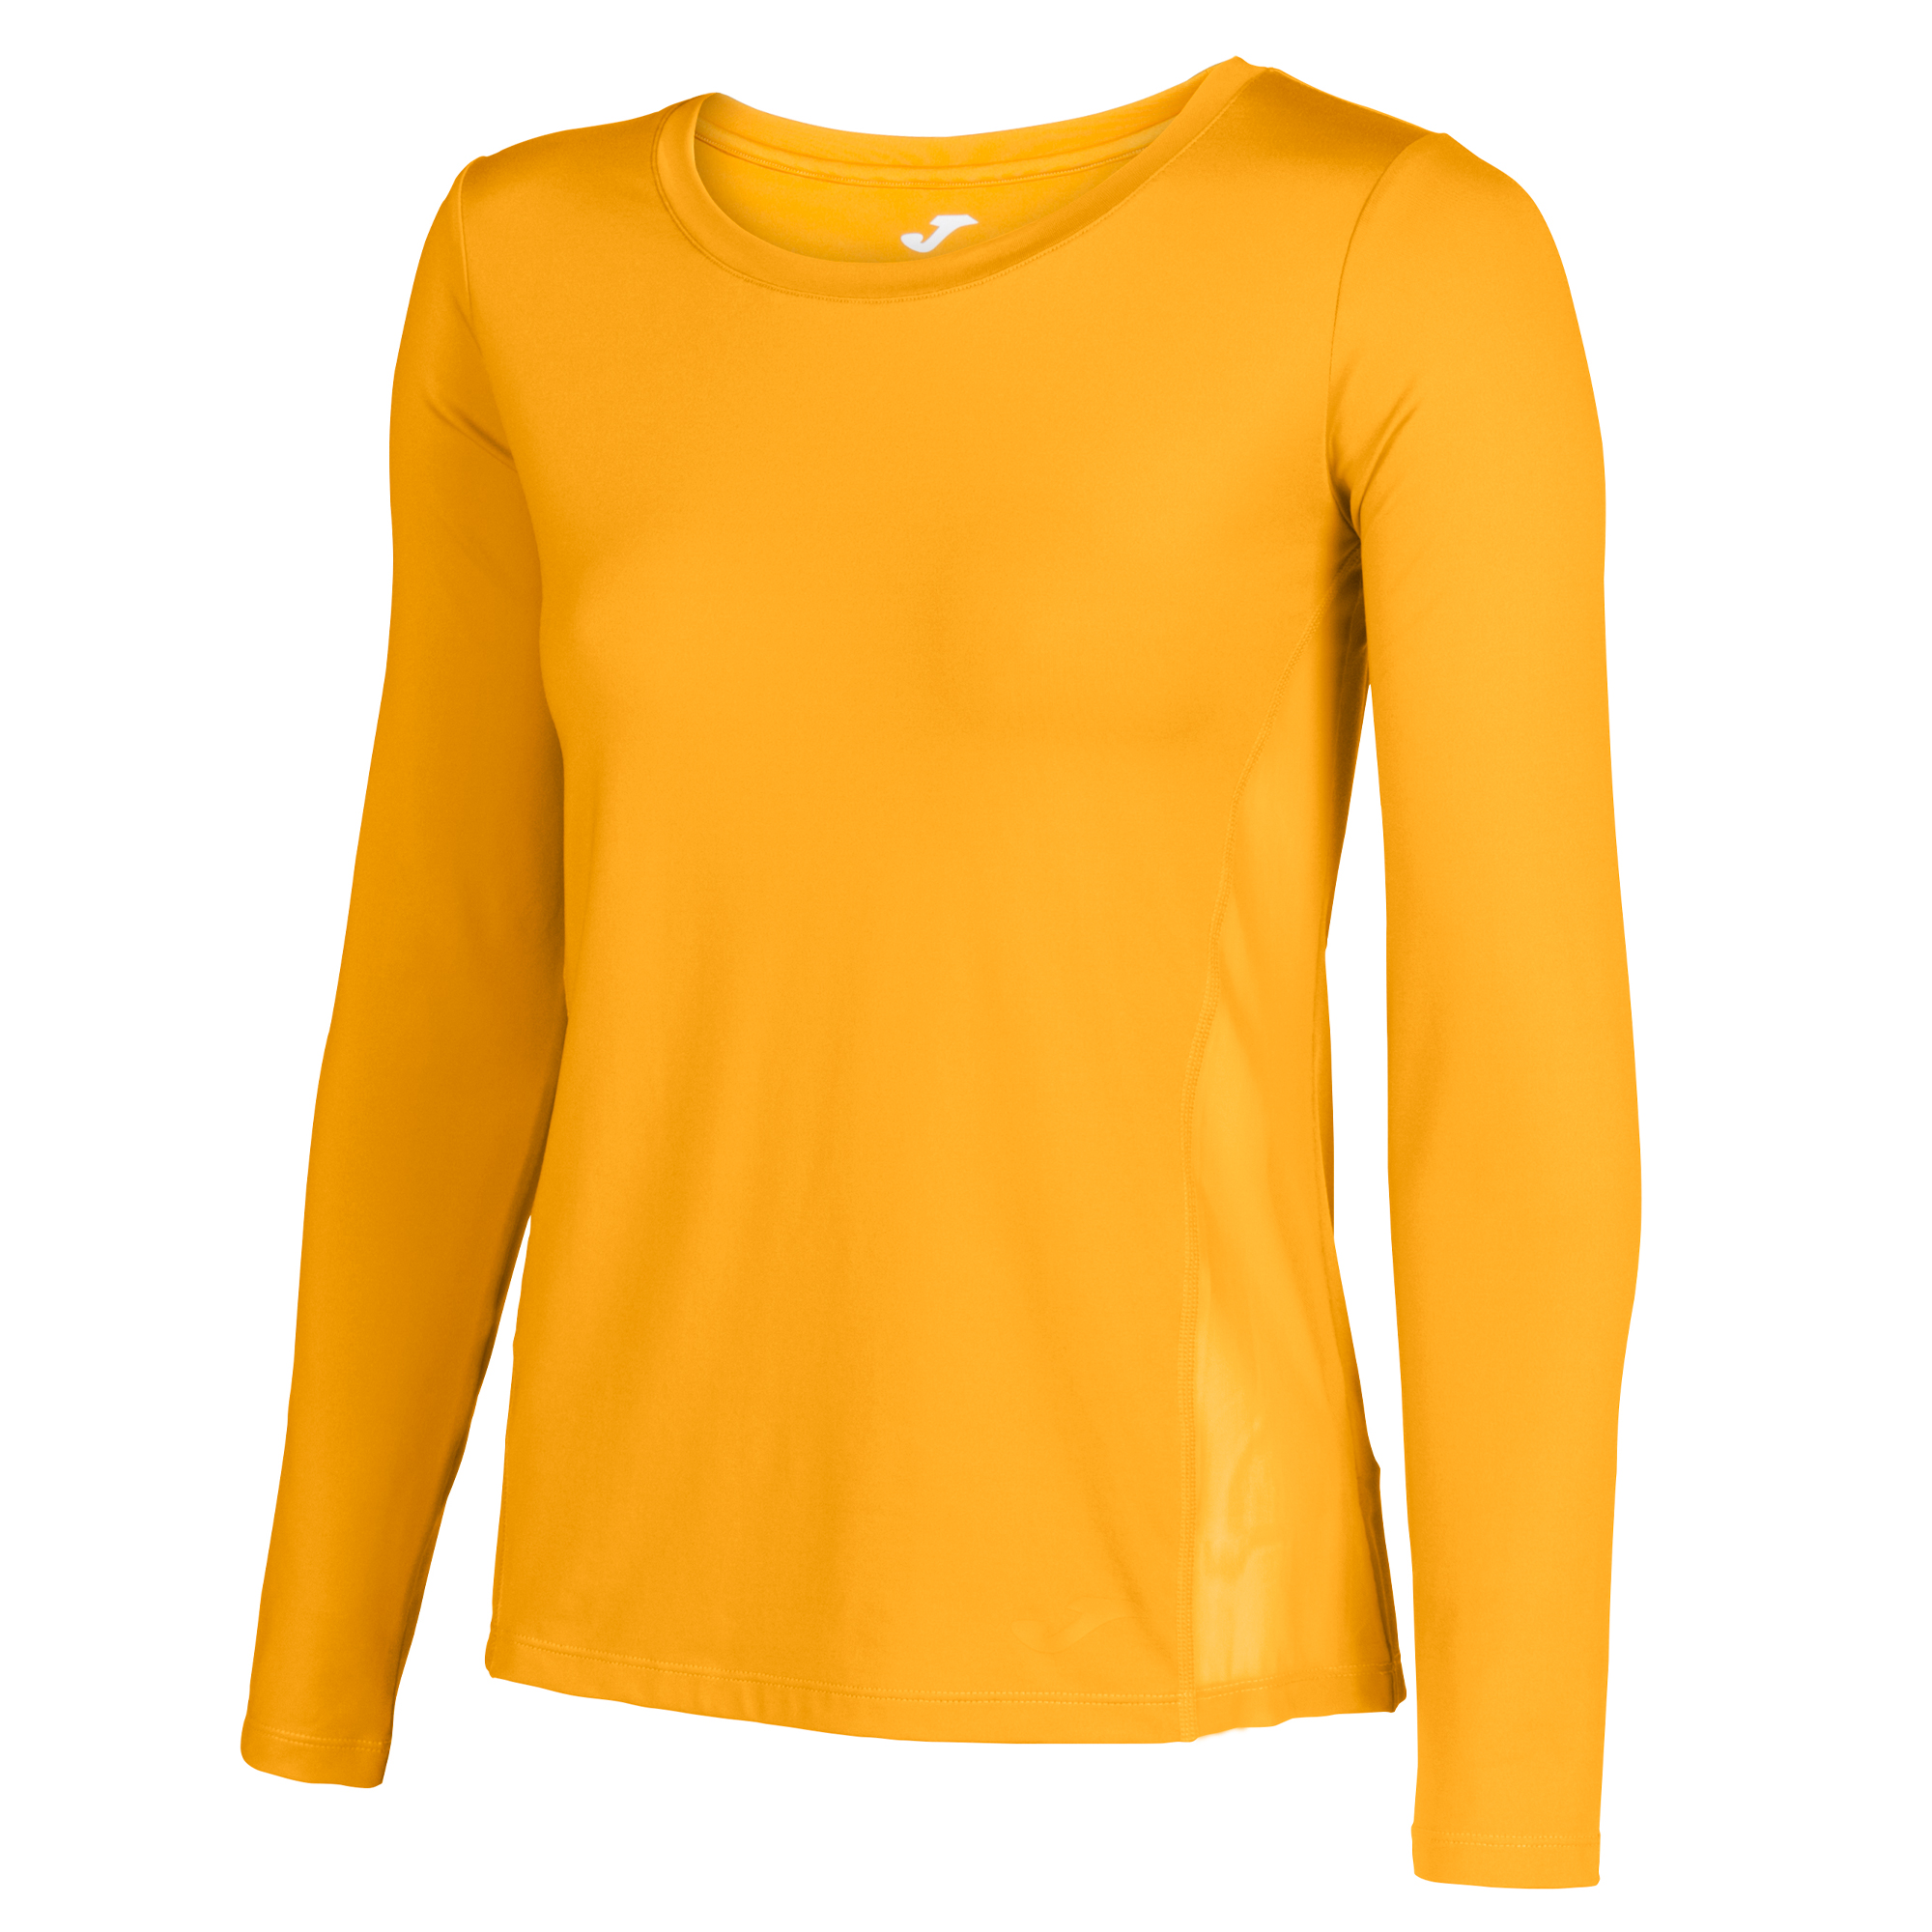 mustard yellow shirt womens